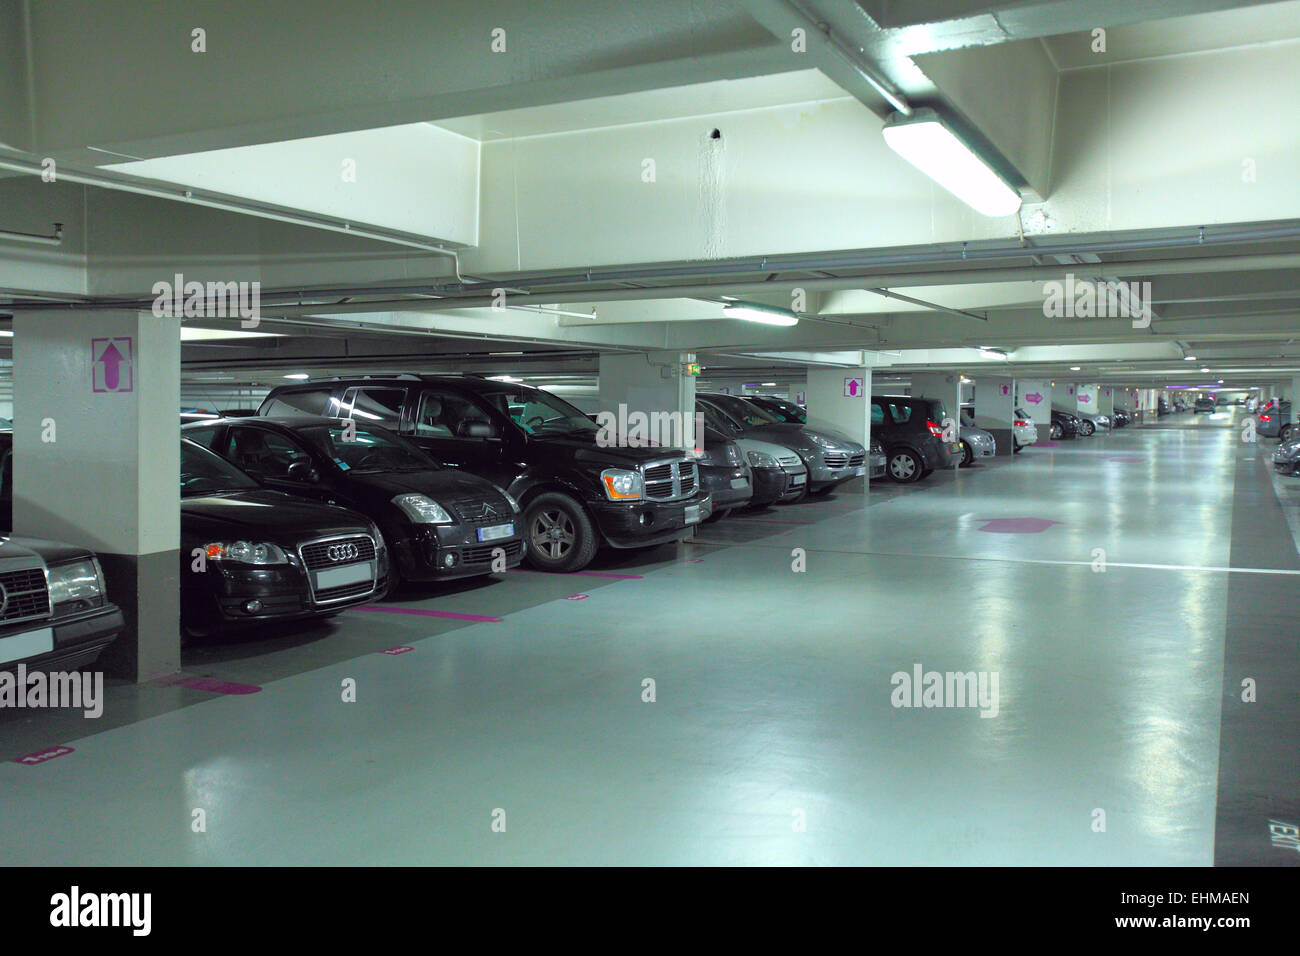 Underground parking garage in France Stock Photo